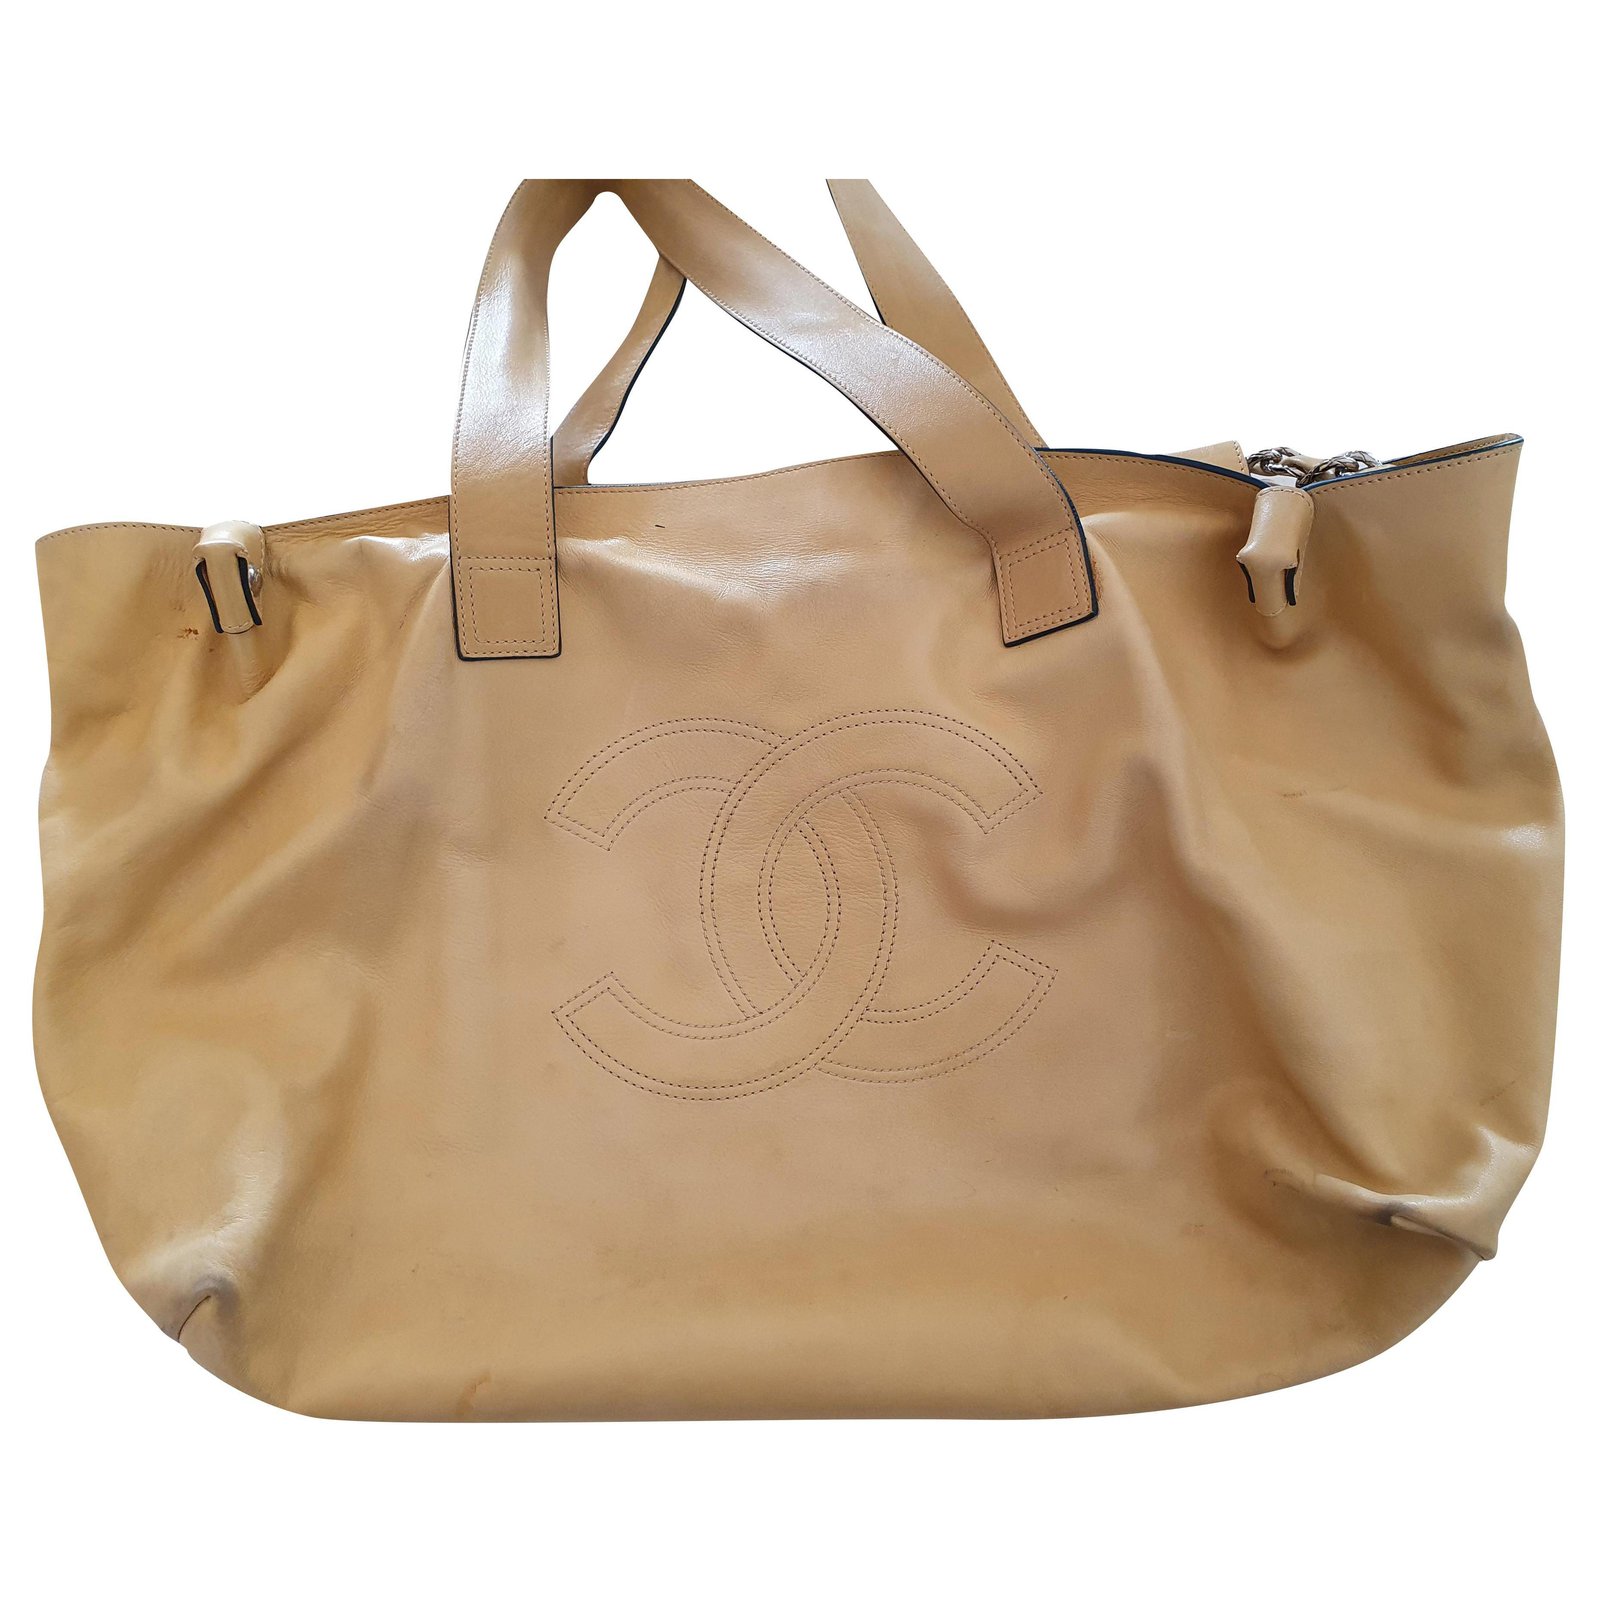 Handbags Chanel Handbag with Shoulder Strap